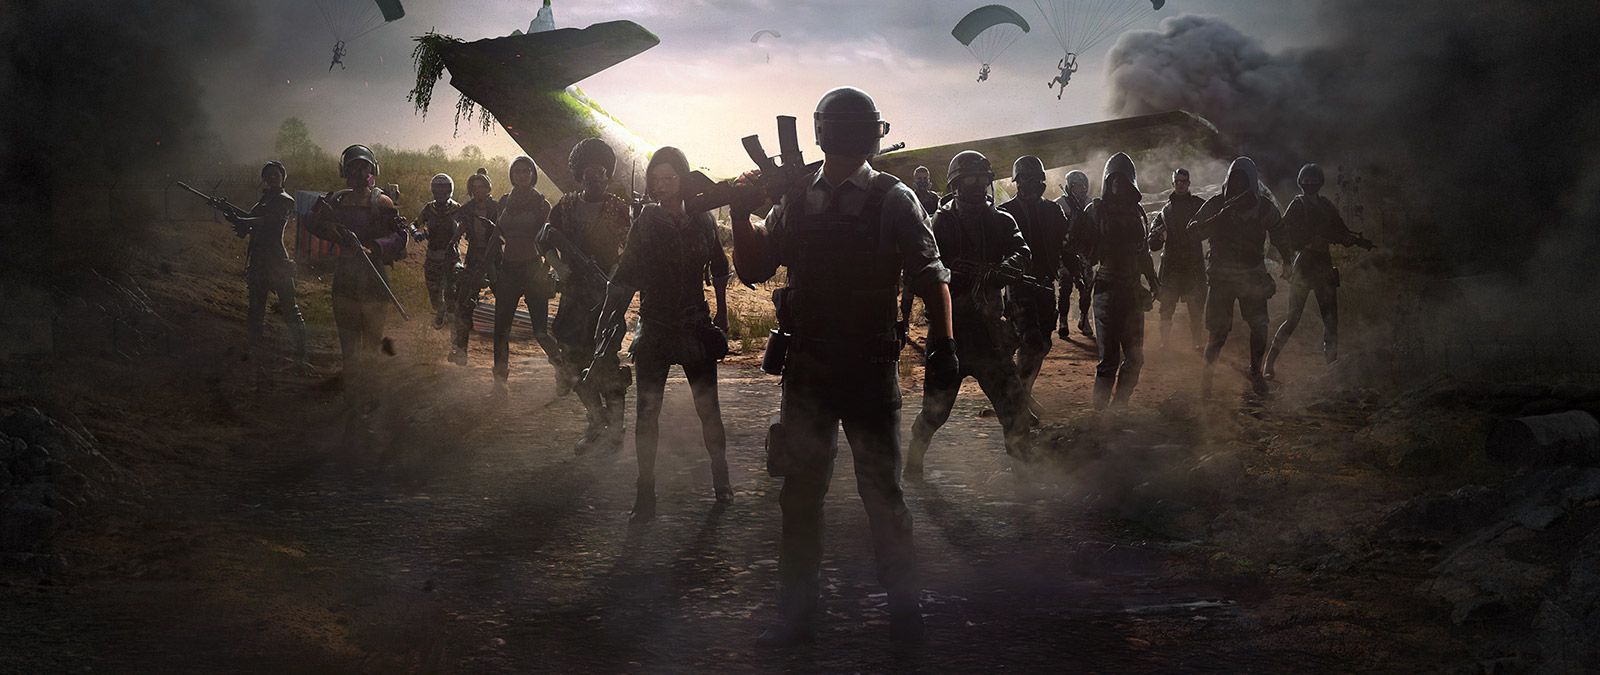 Grupa graczy gromadzi się wokół rozbitego samolotu, podczas gdy inni spuszczają się na spadochronach.